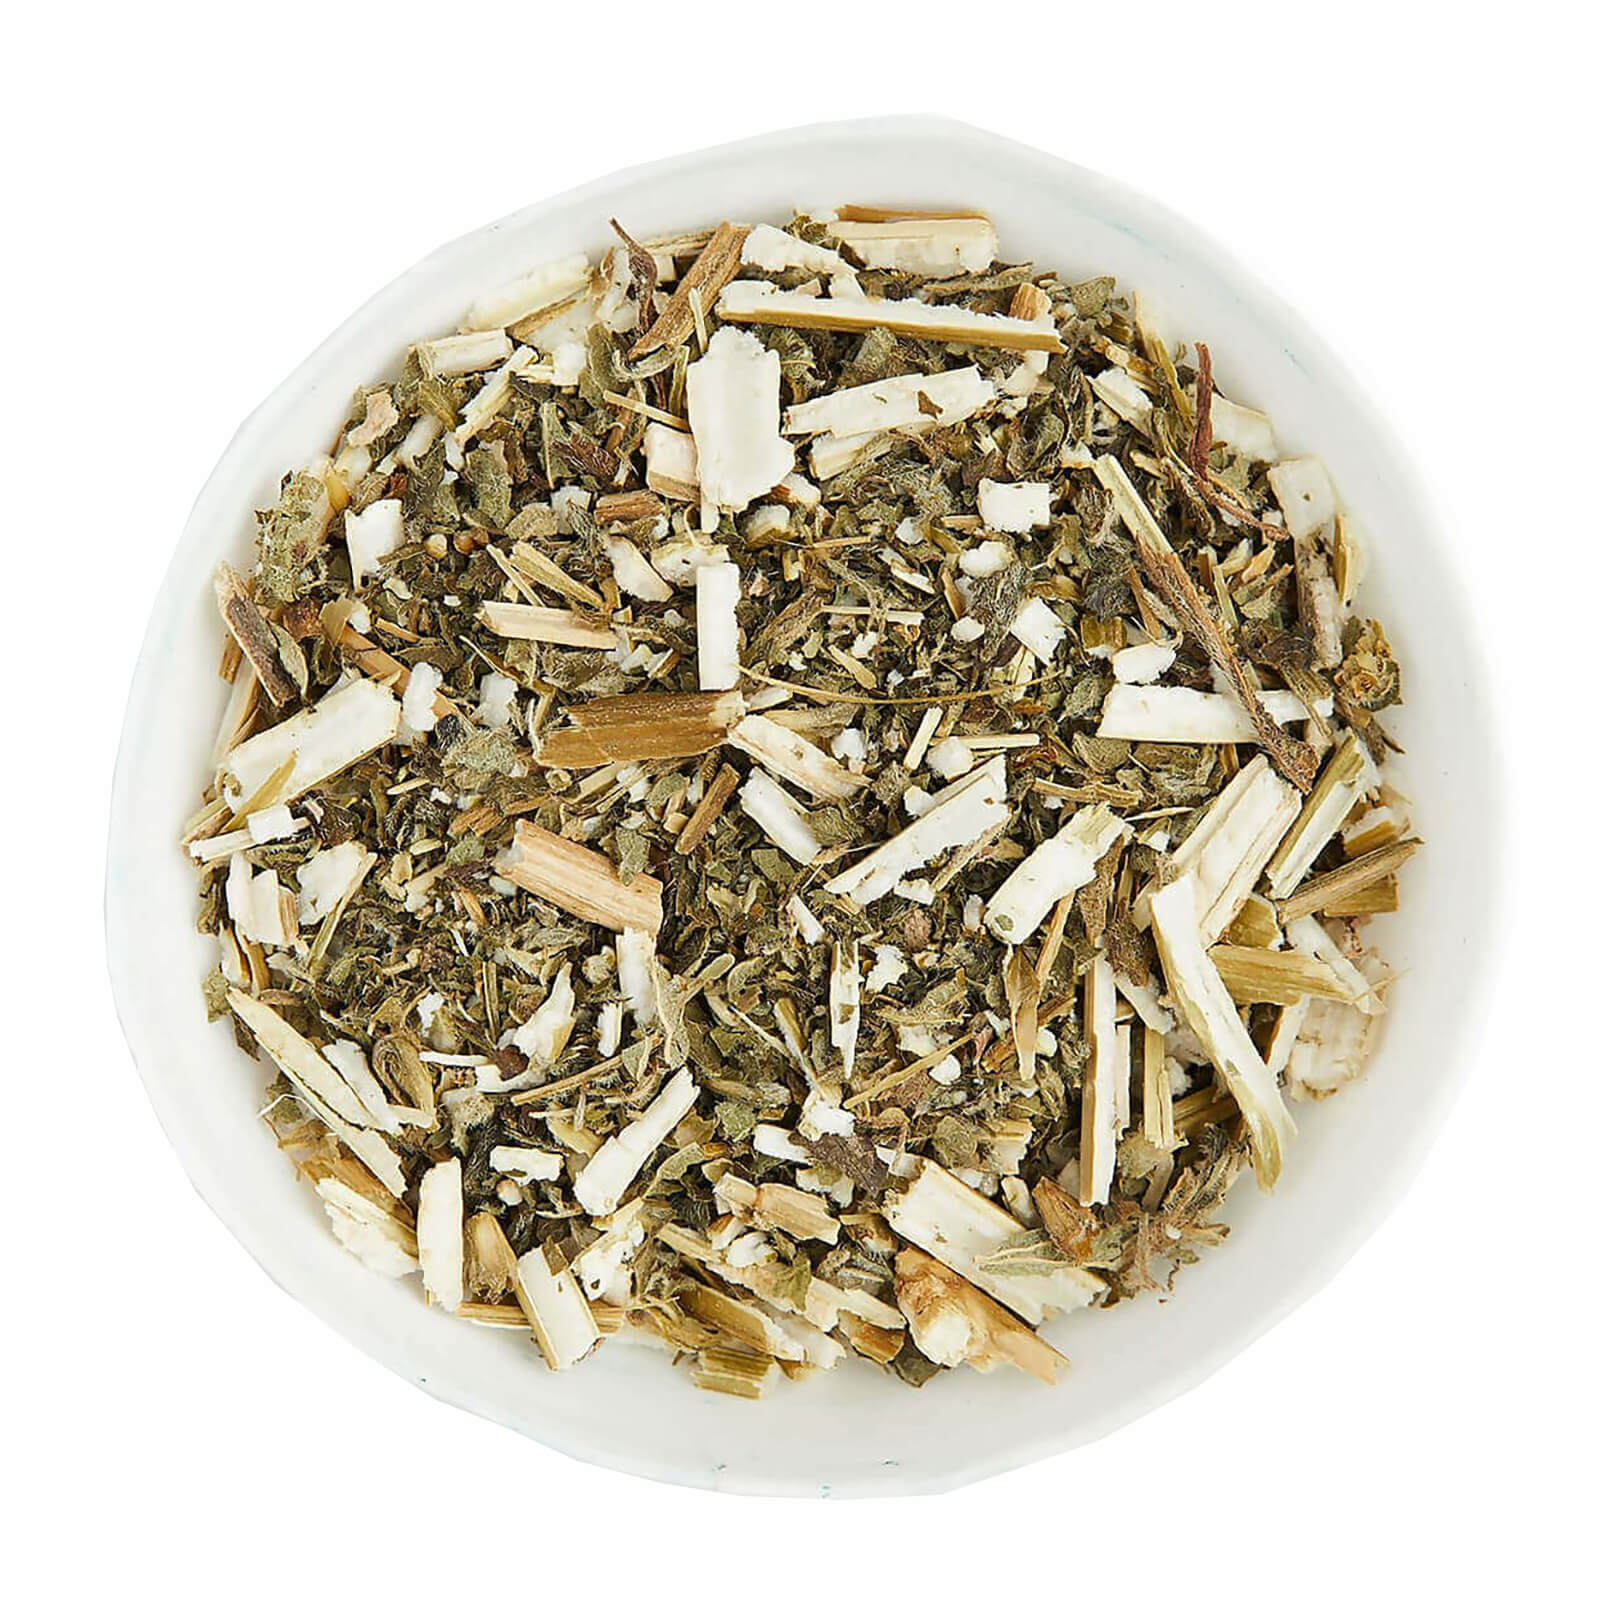 Motherwort Dried Herb 50g